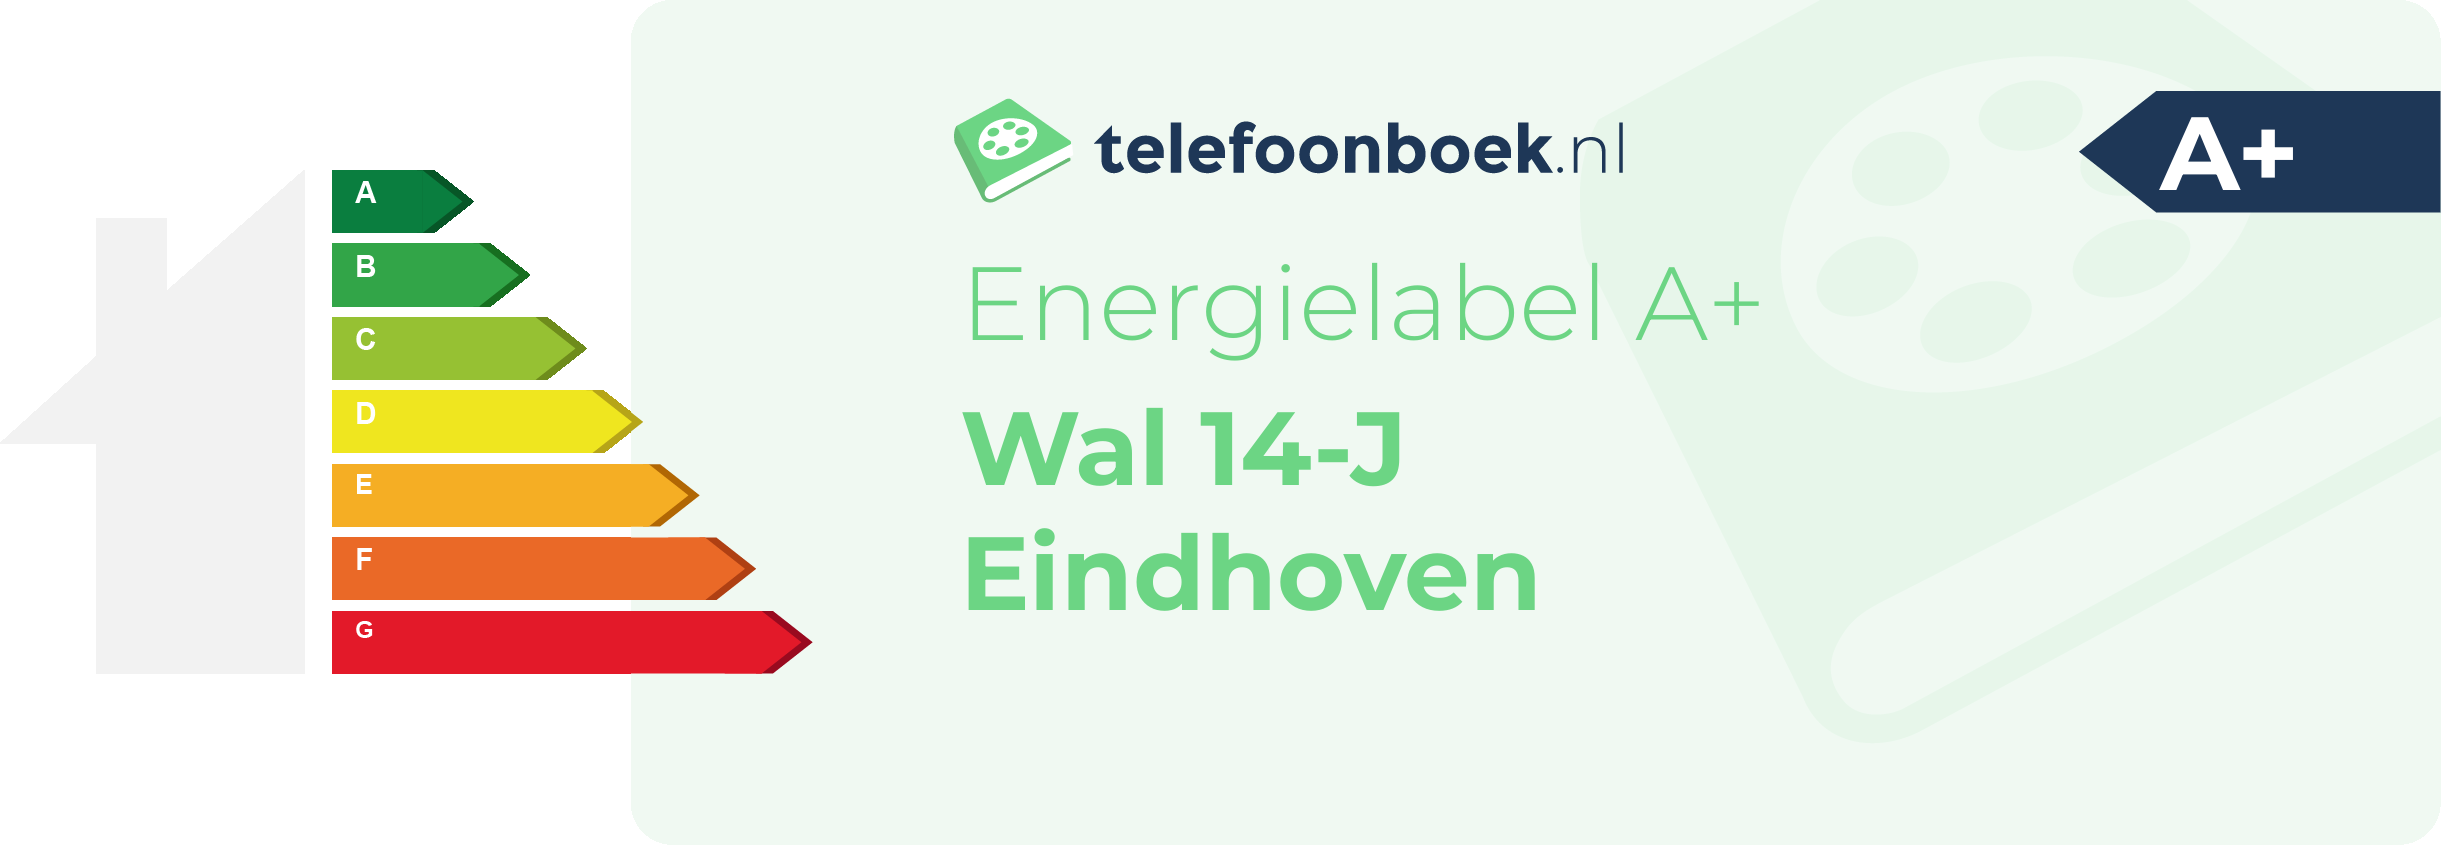 Energielabel Wal 14-J Eindhoven